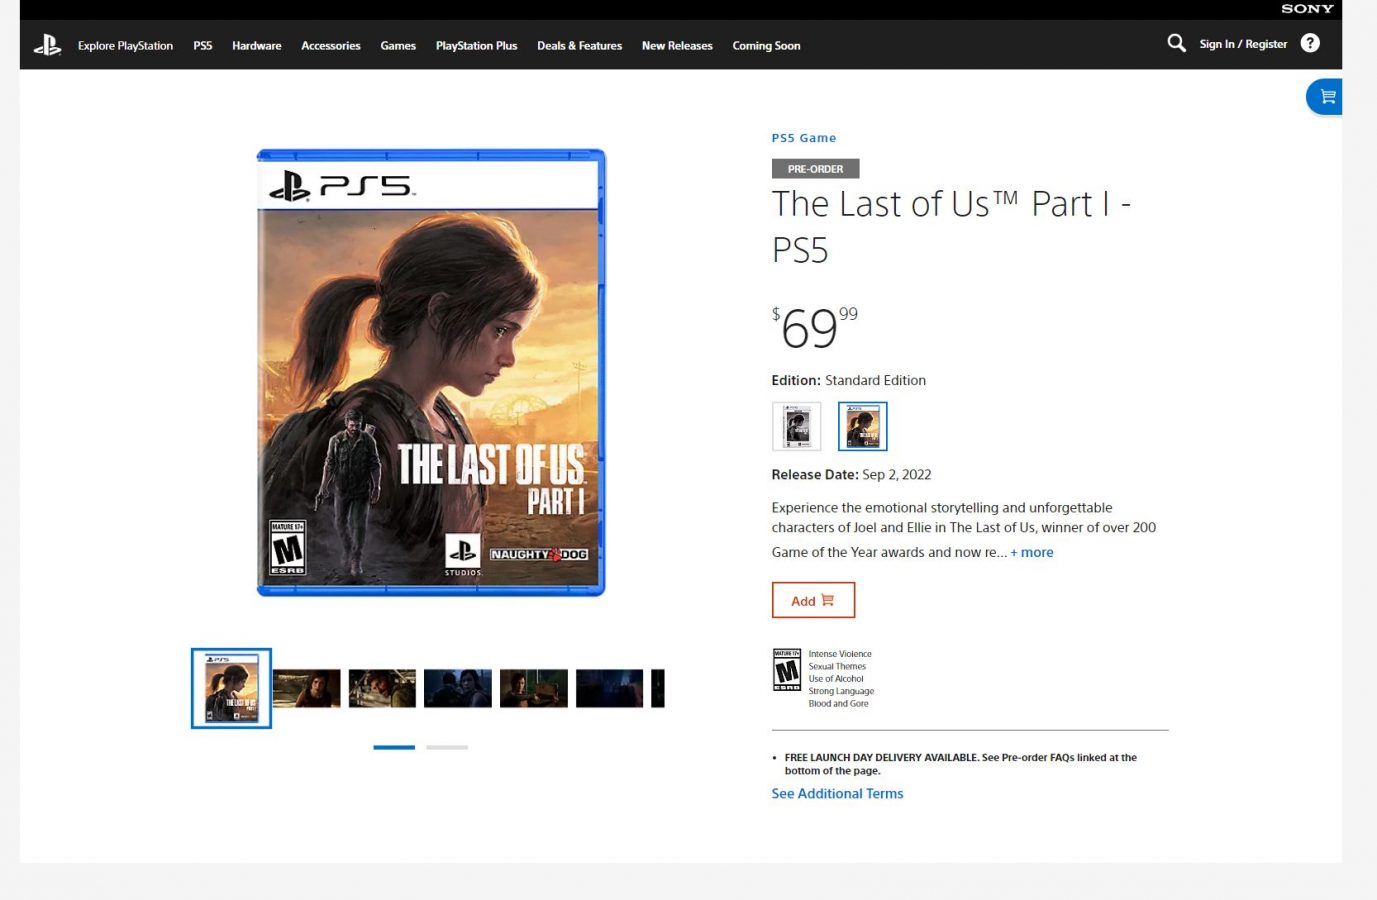 The Last of Us Part I - strona zamówień przedpremierowych (źródło: PlayStation Direct)